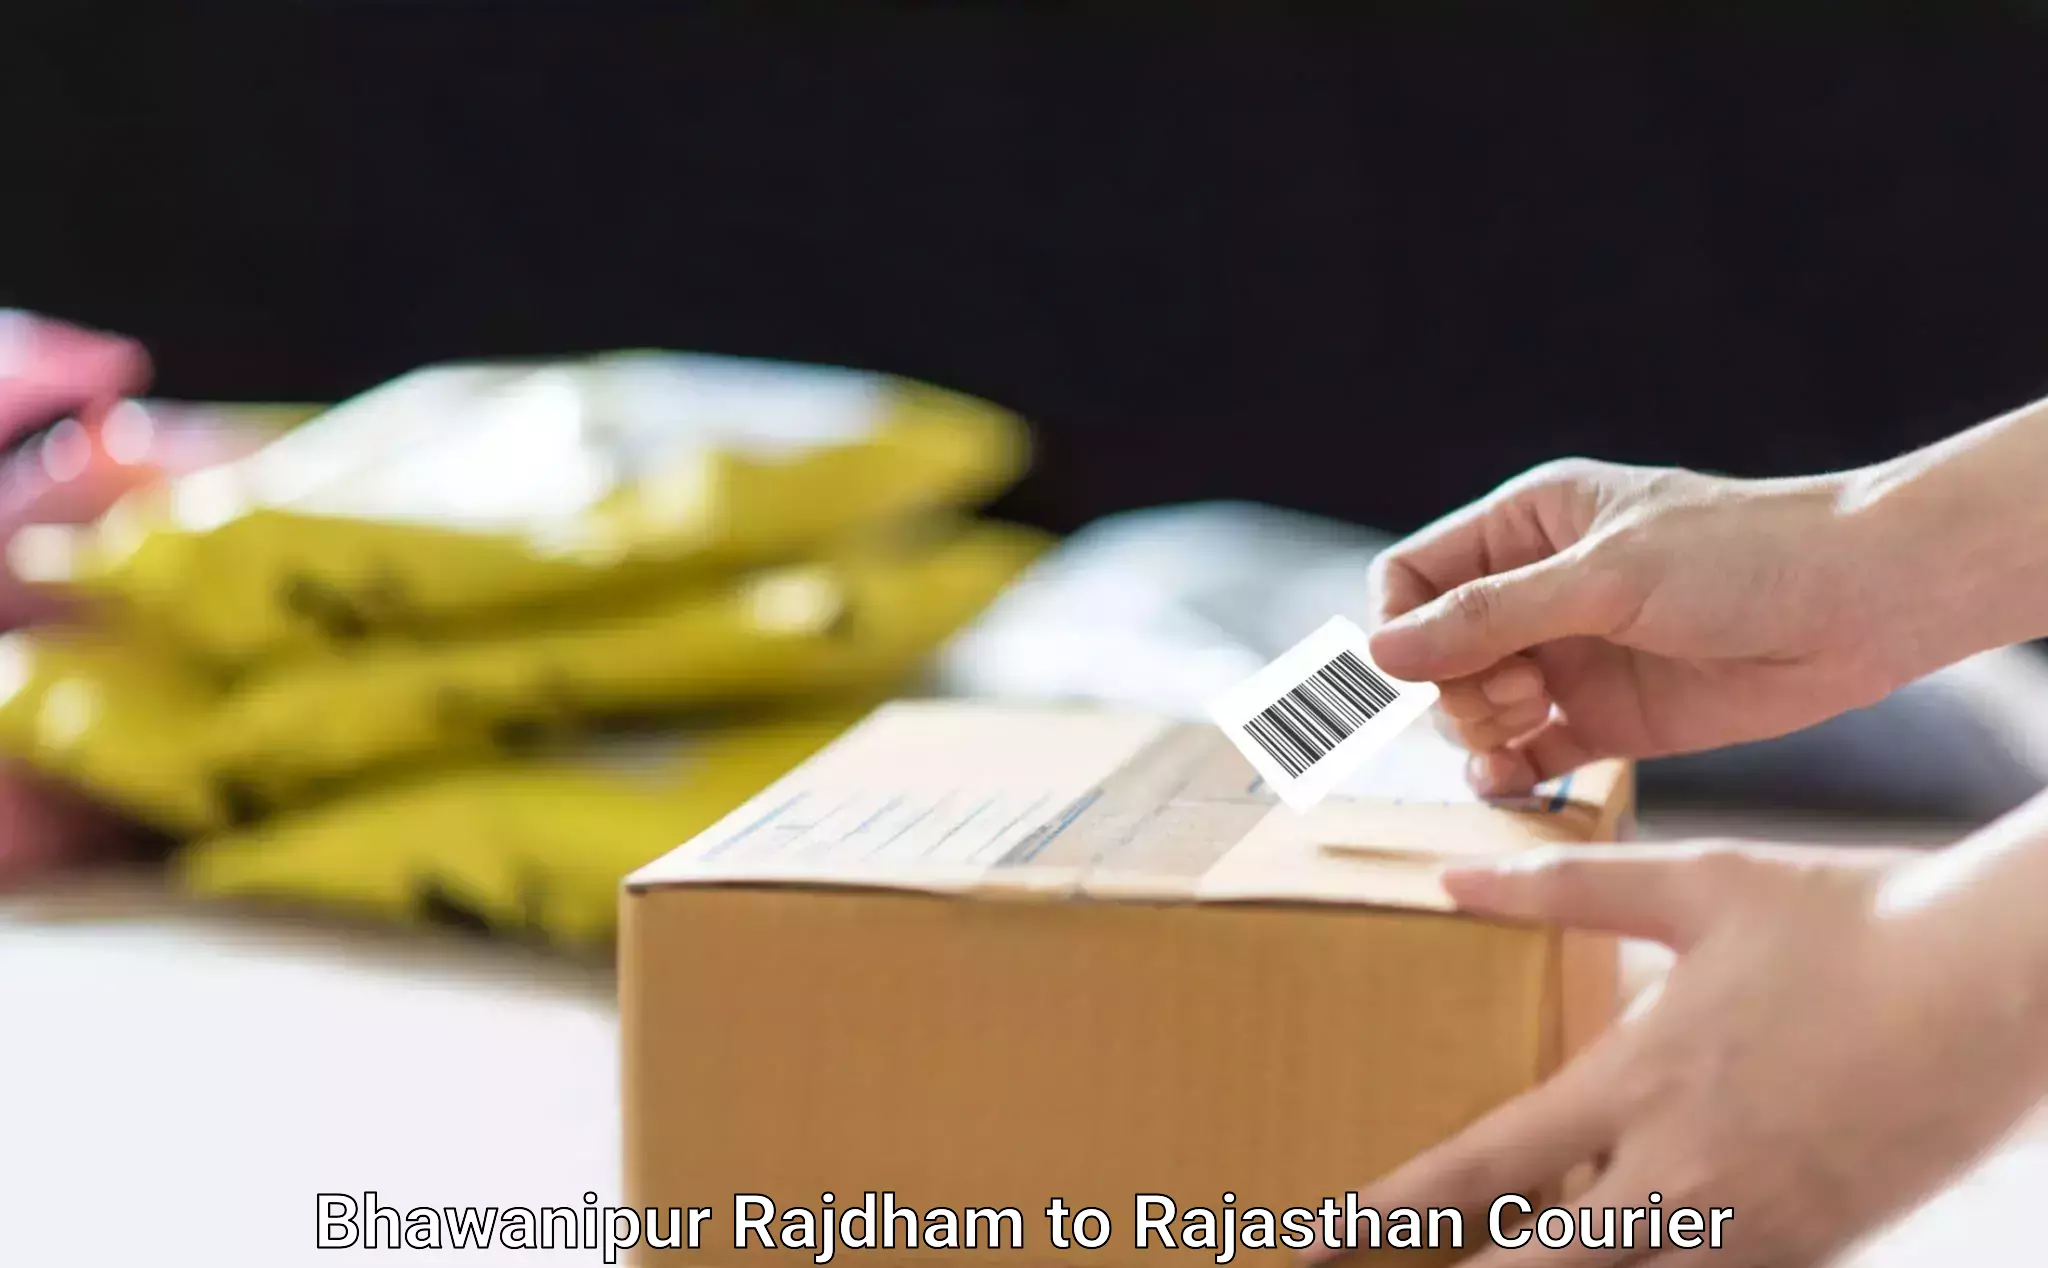 Furniture moving plans Bhawanipur Rajdham to Rajasthan